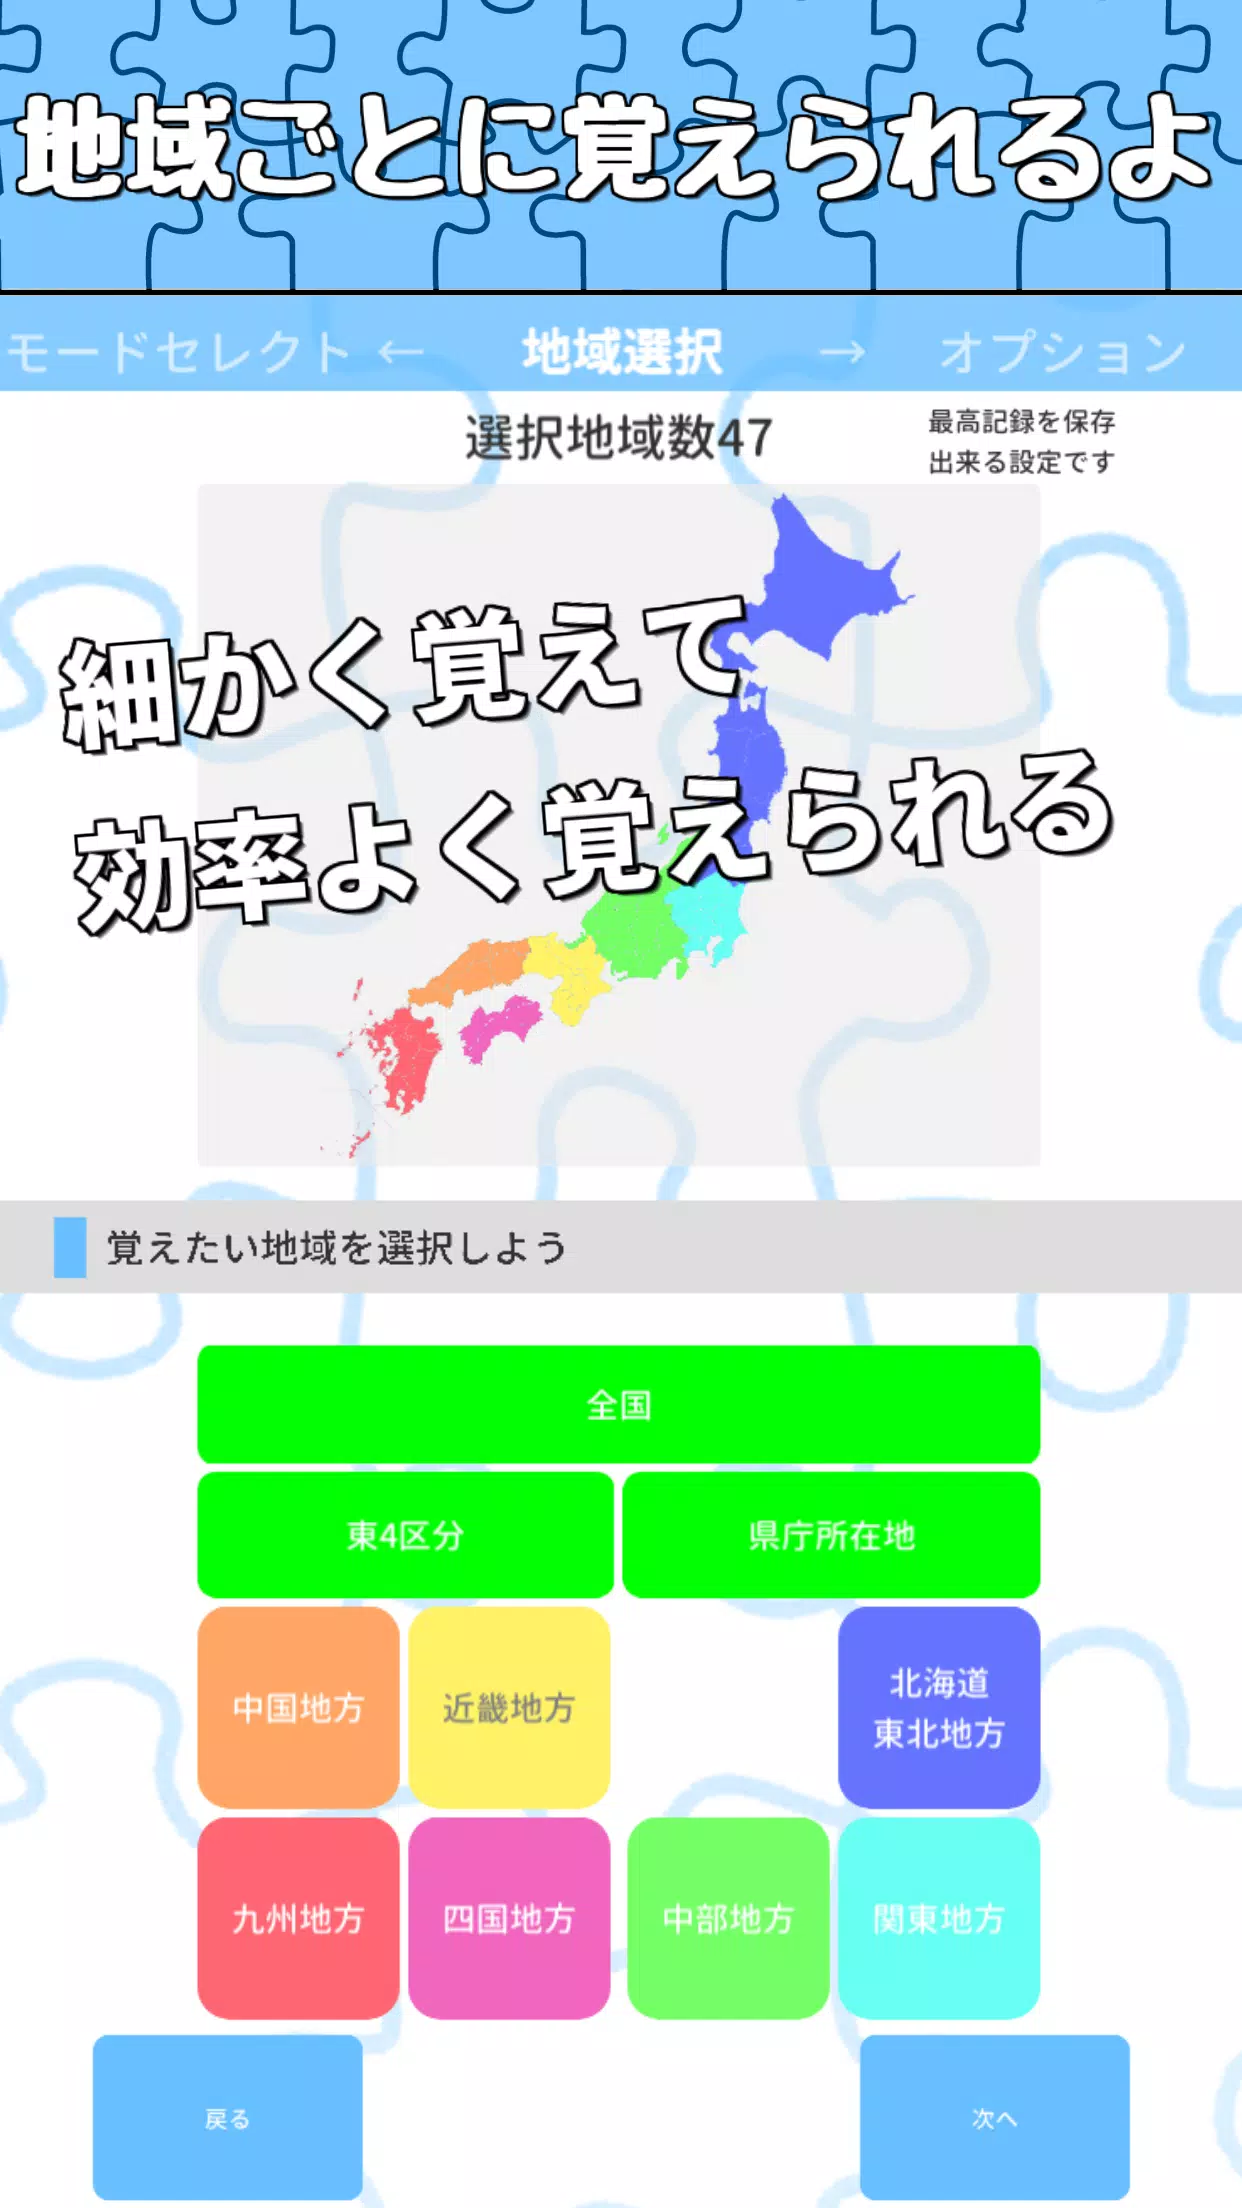 日本地名パズル 都道府県 県庁所在地 市区町村が遊べる日本地図パズル For Android Apk Download